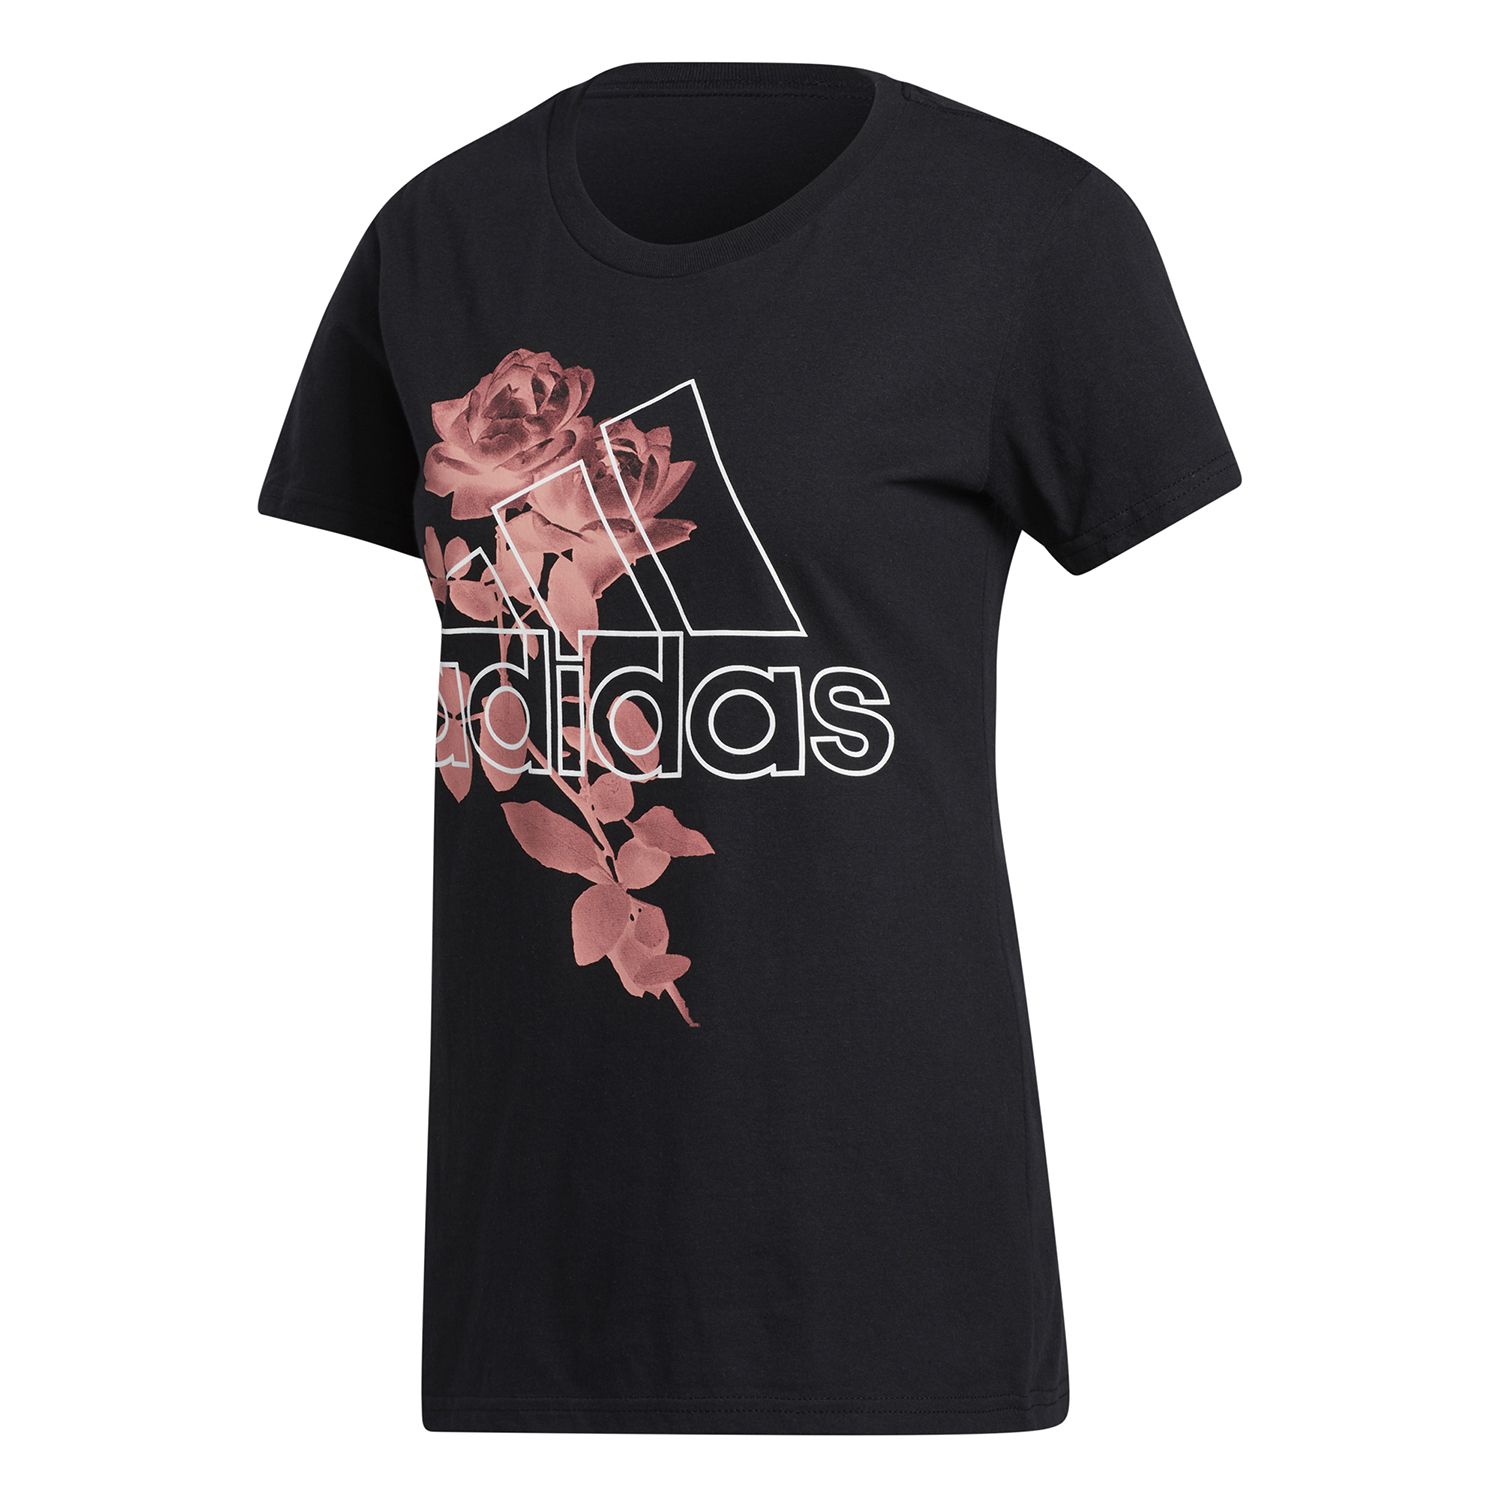 adidas t shirt women's floral